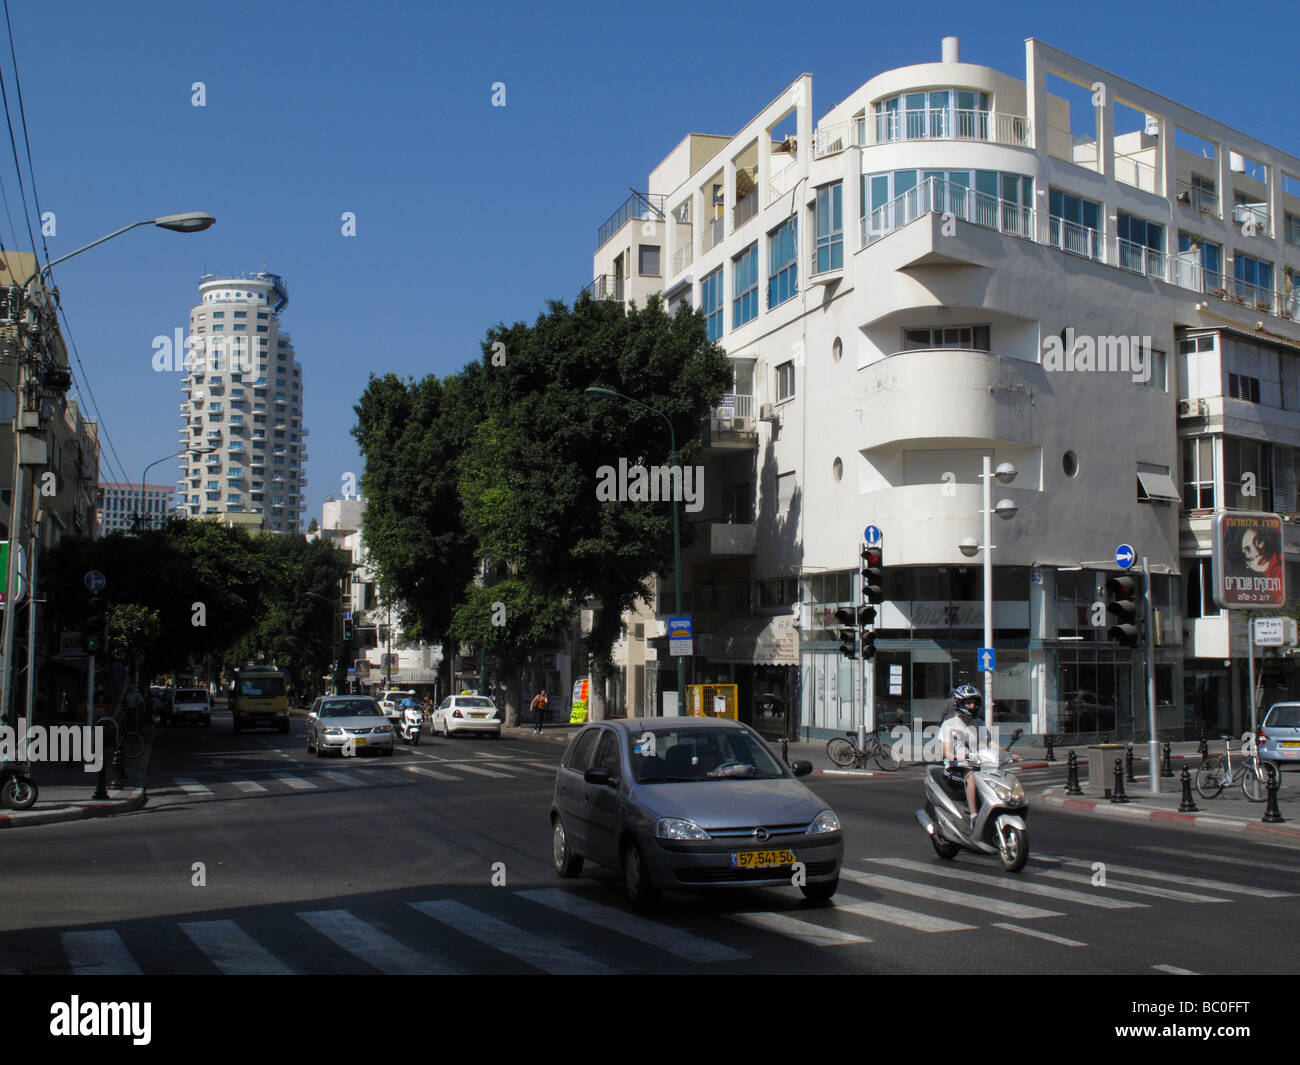 Un bâtiment rénové qui a été construit dans les années 1930 dans l'architecture du Bauhaus style avec façade bombée dans la rue Ben Yehuda centre-ville de Tel Aviv ISRAËL Banque D'Images